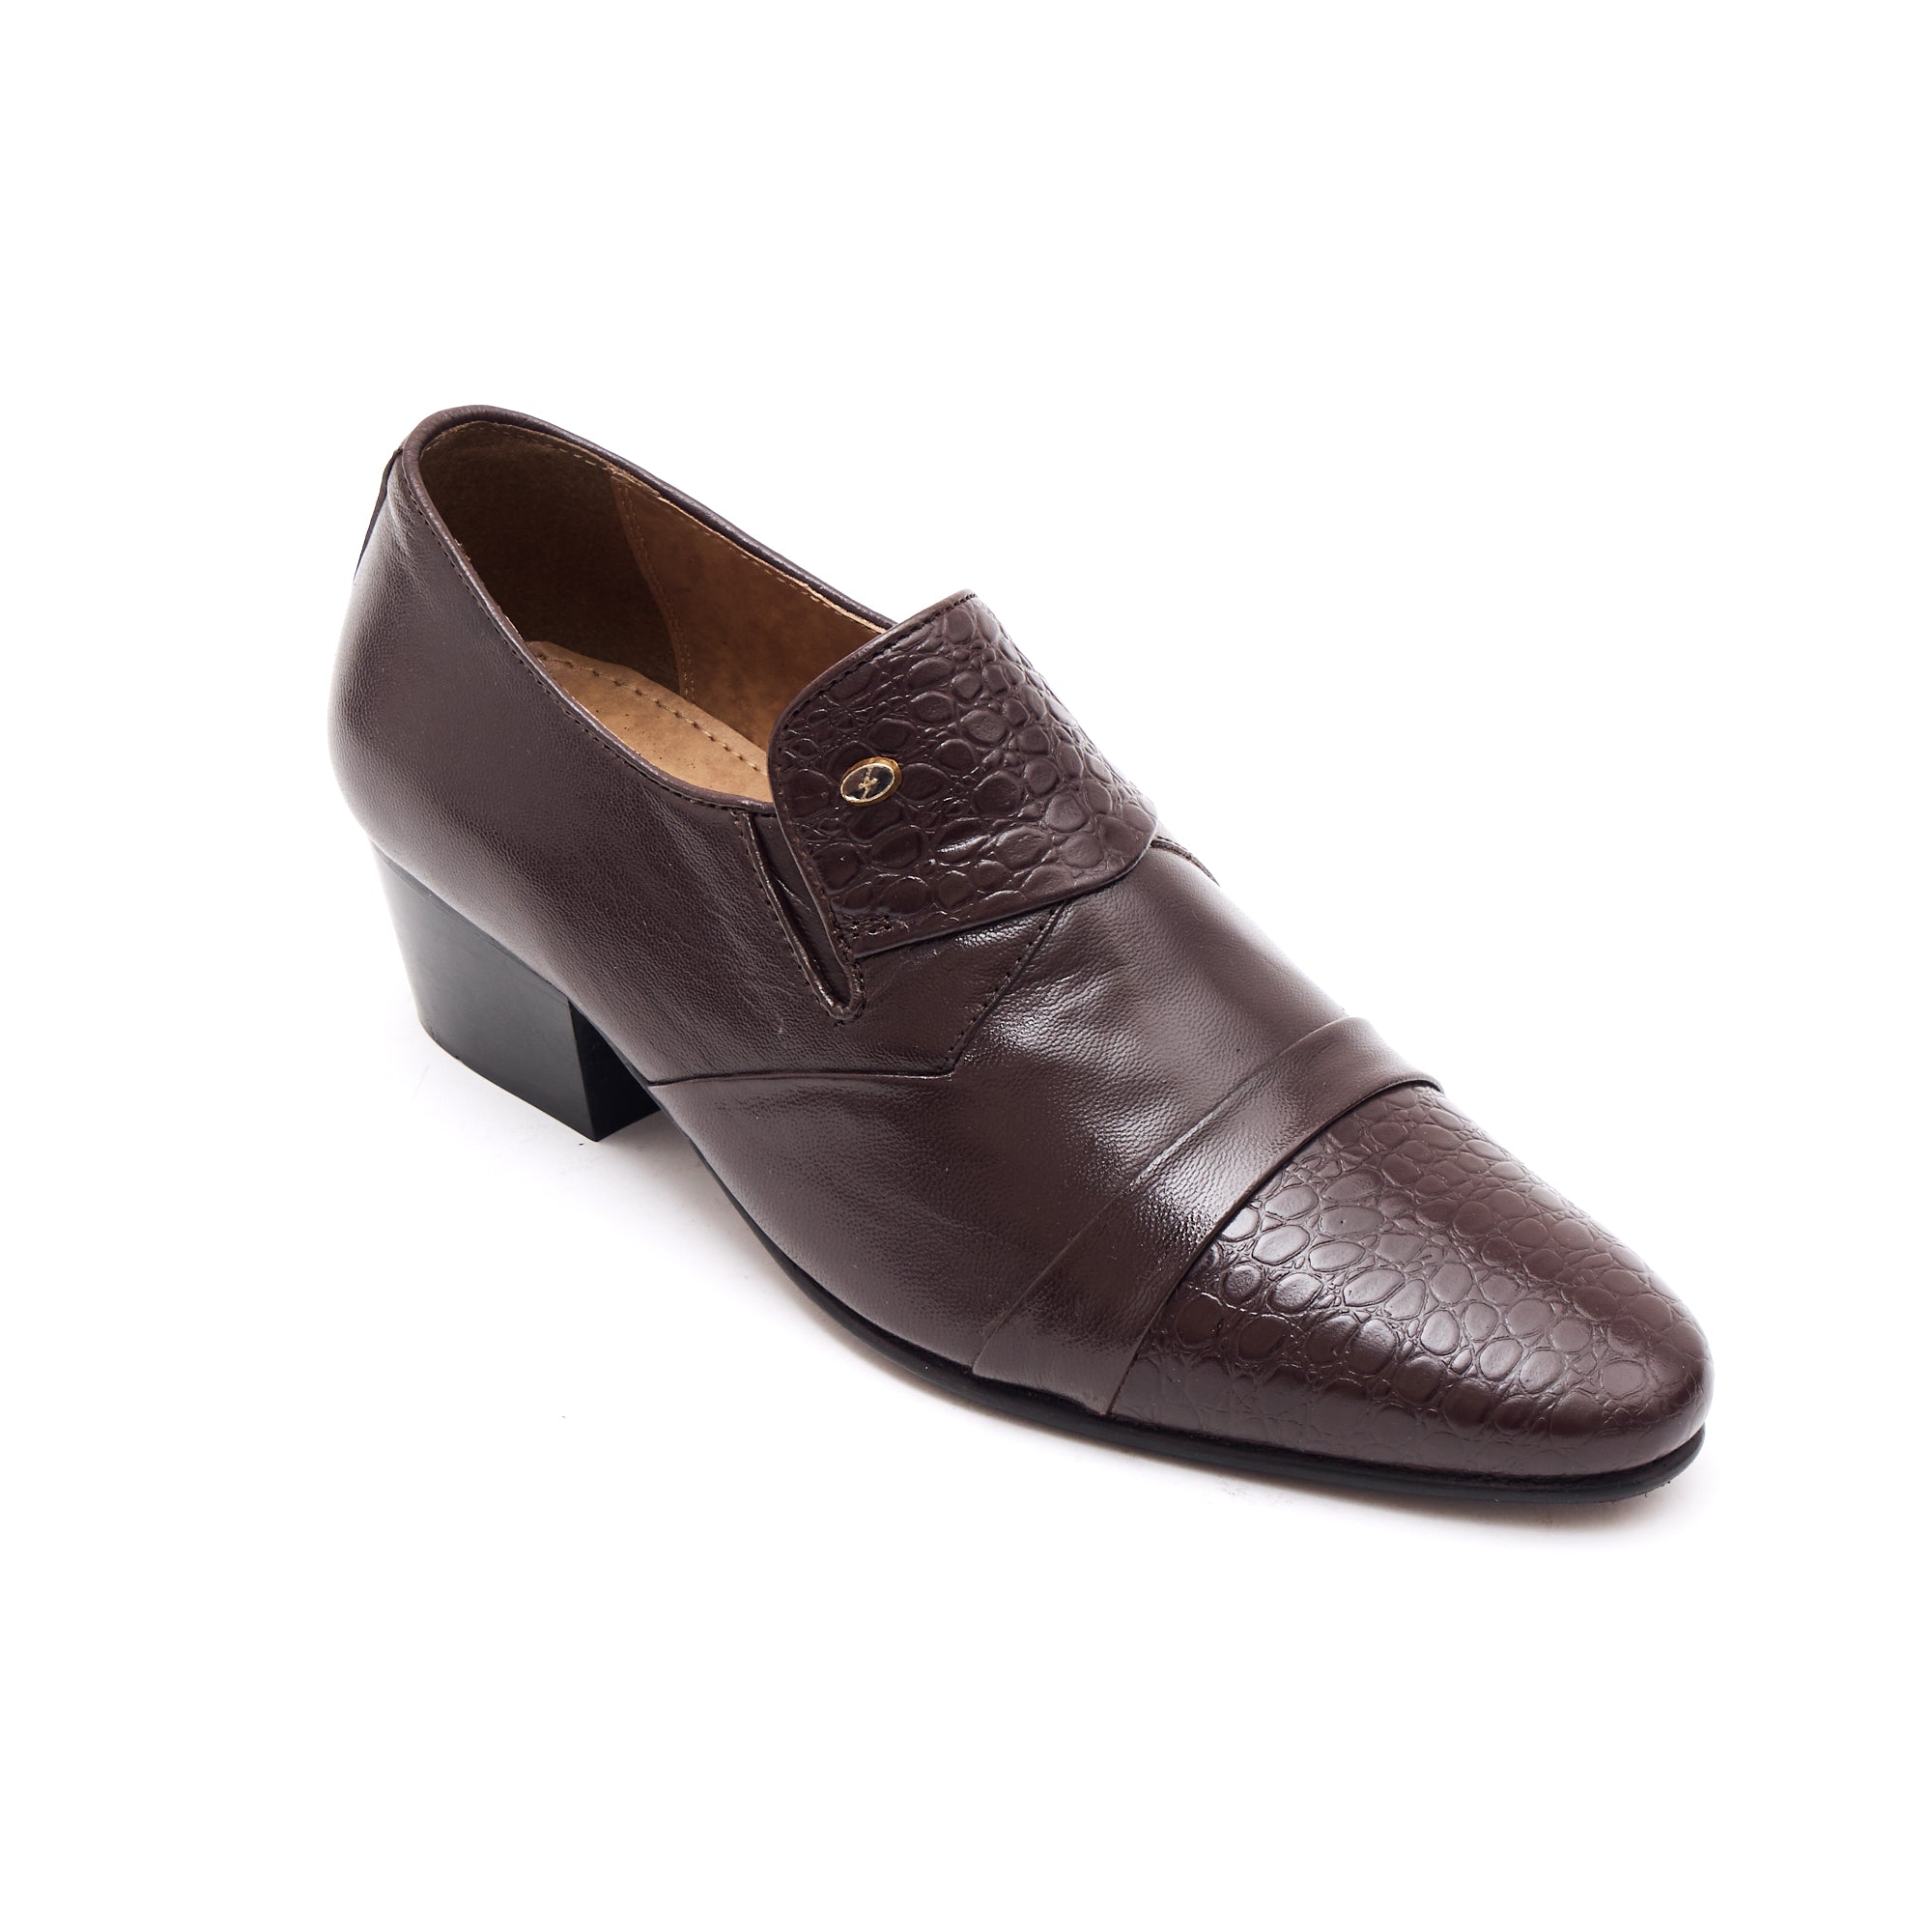 Buy Tan Formal Shoes for Men by FENTACIA Online | Ajio.com